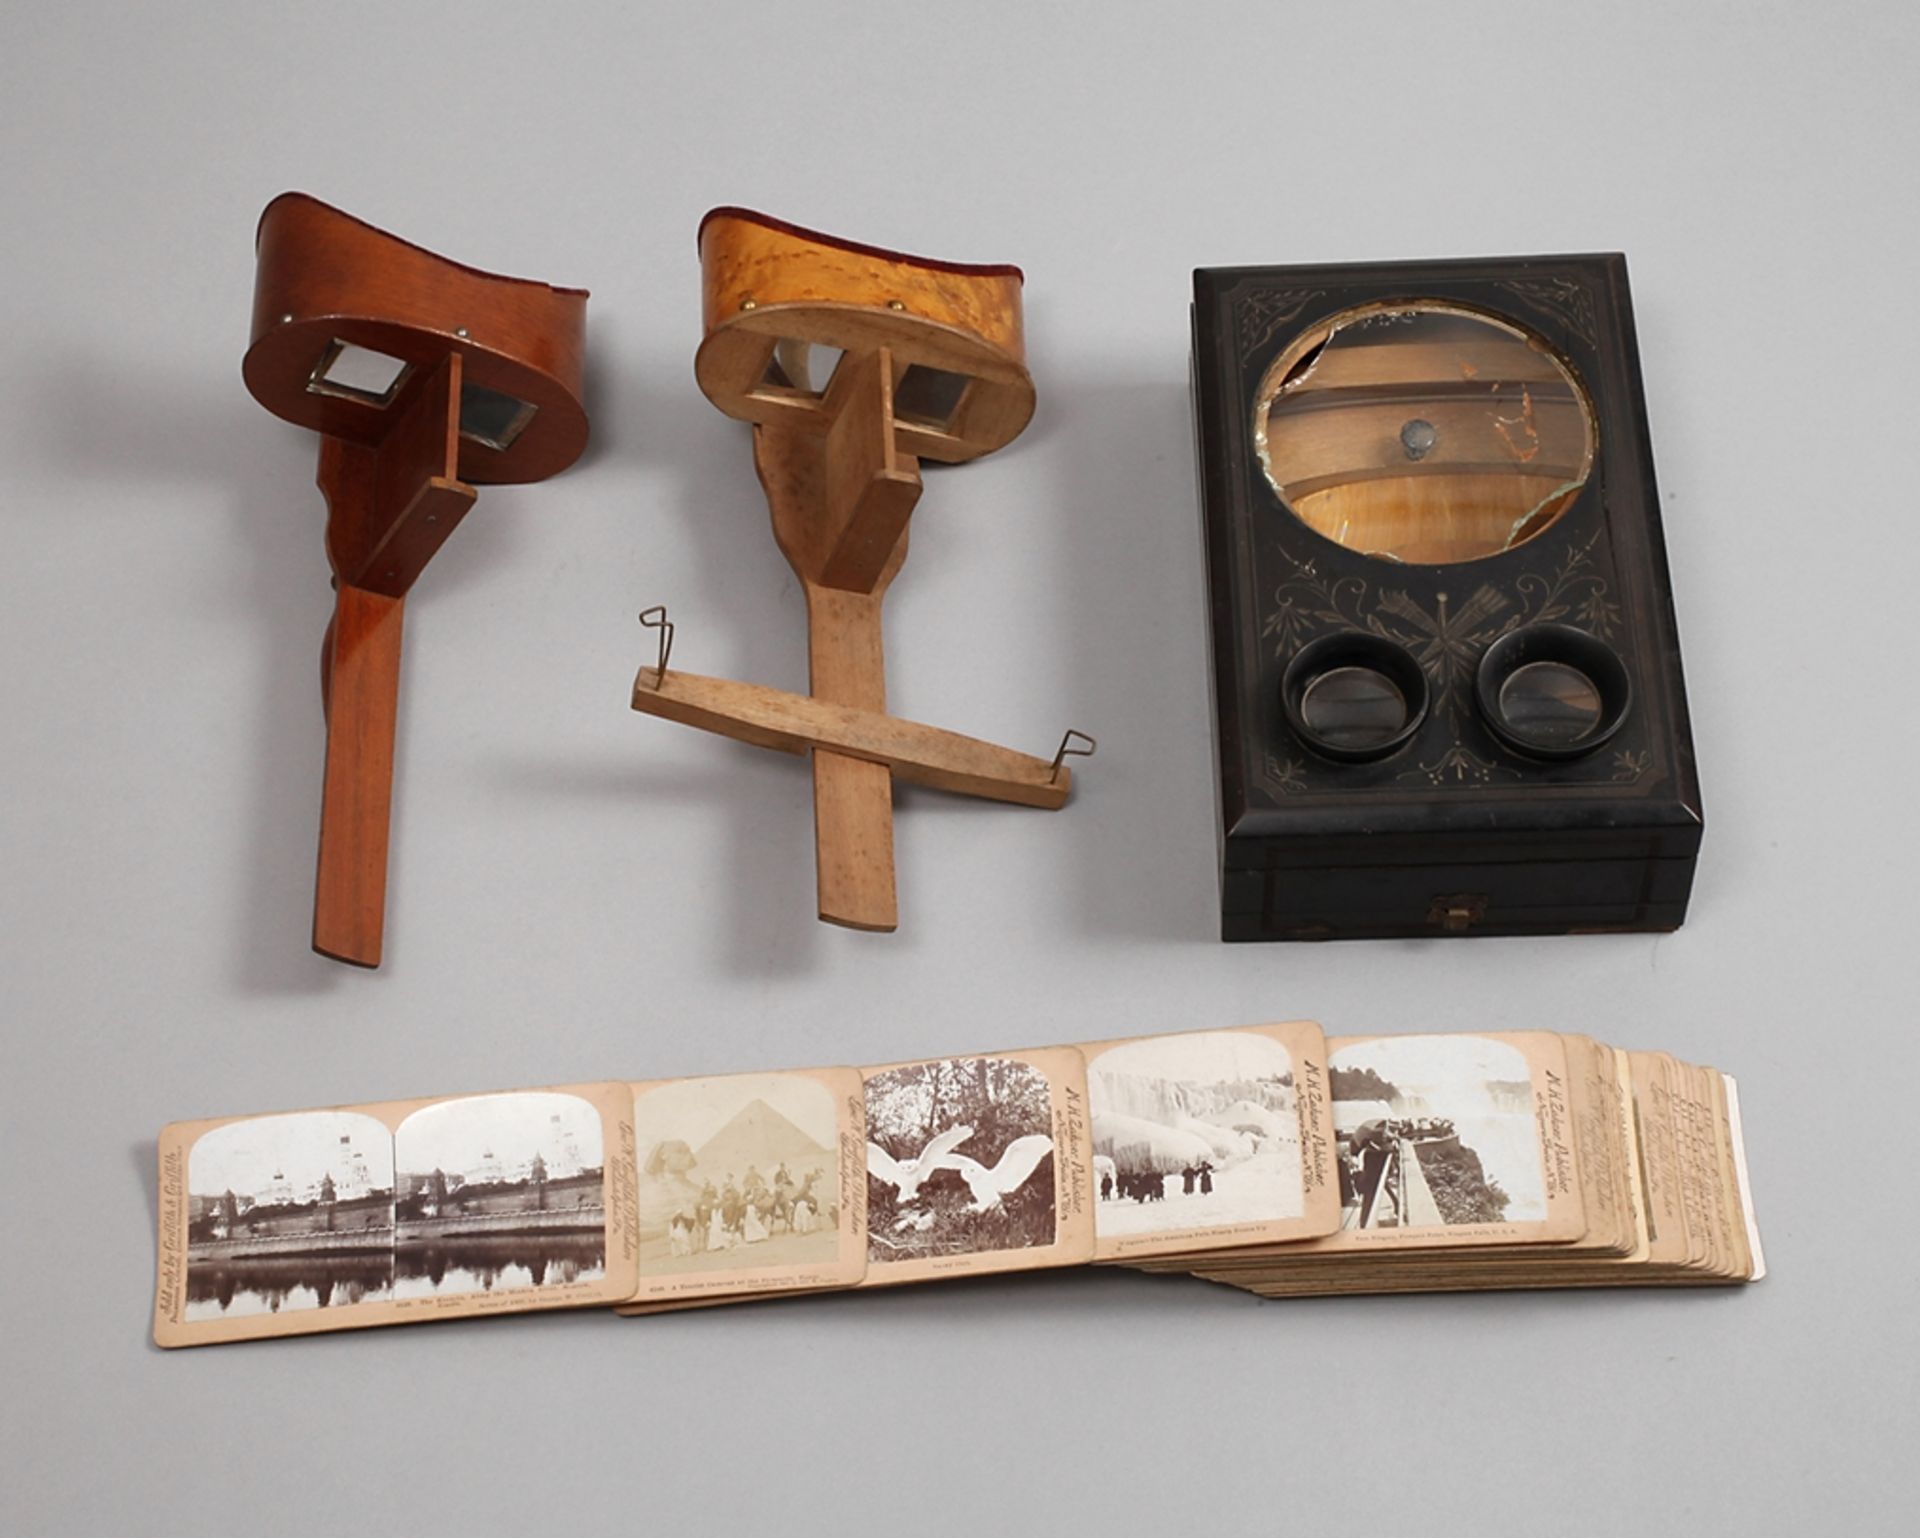 Konvolut Stereobetrachter und Stereobilderum 1900, verschiedene Hölzer, bestehend aus einem Stereo-